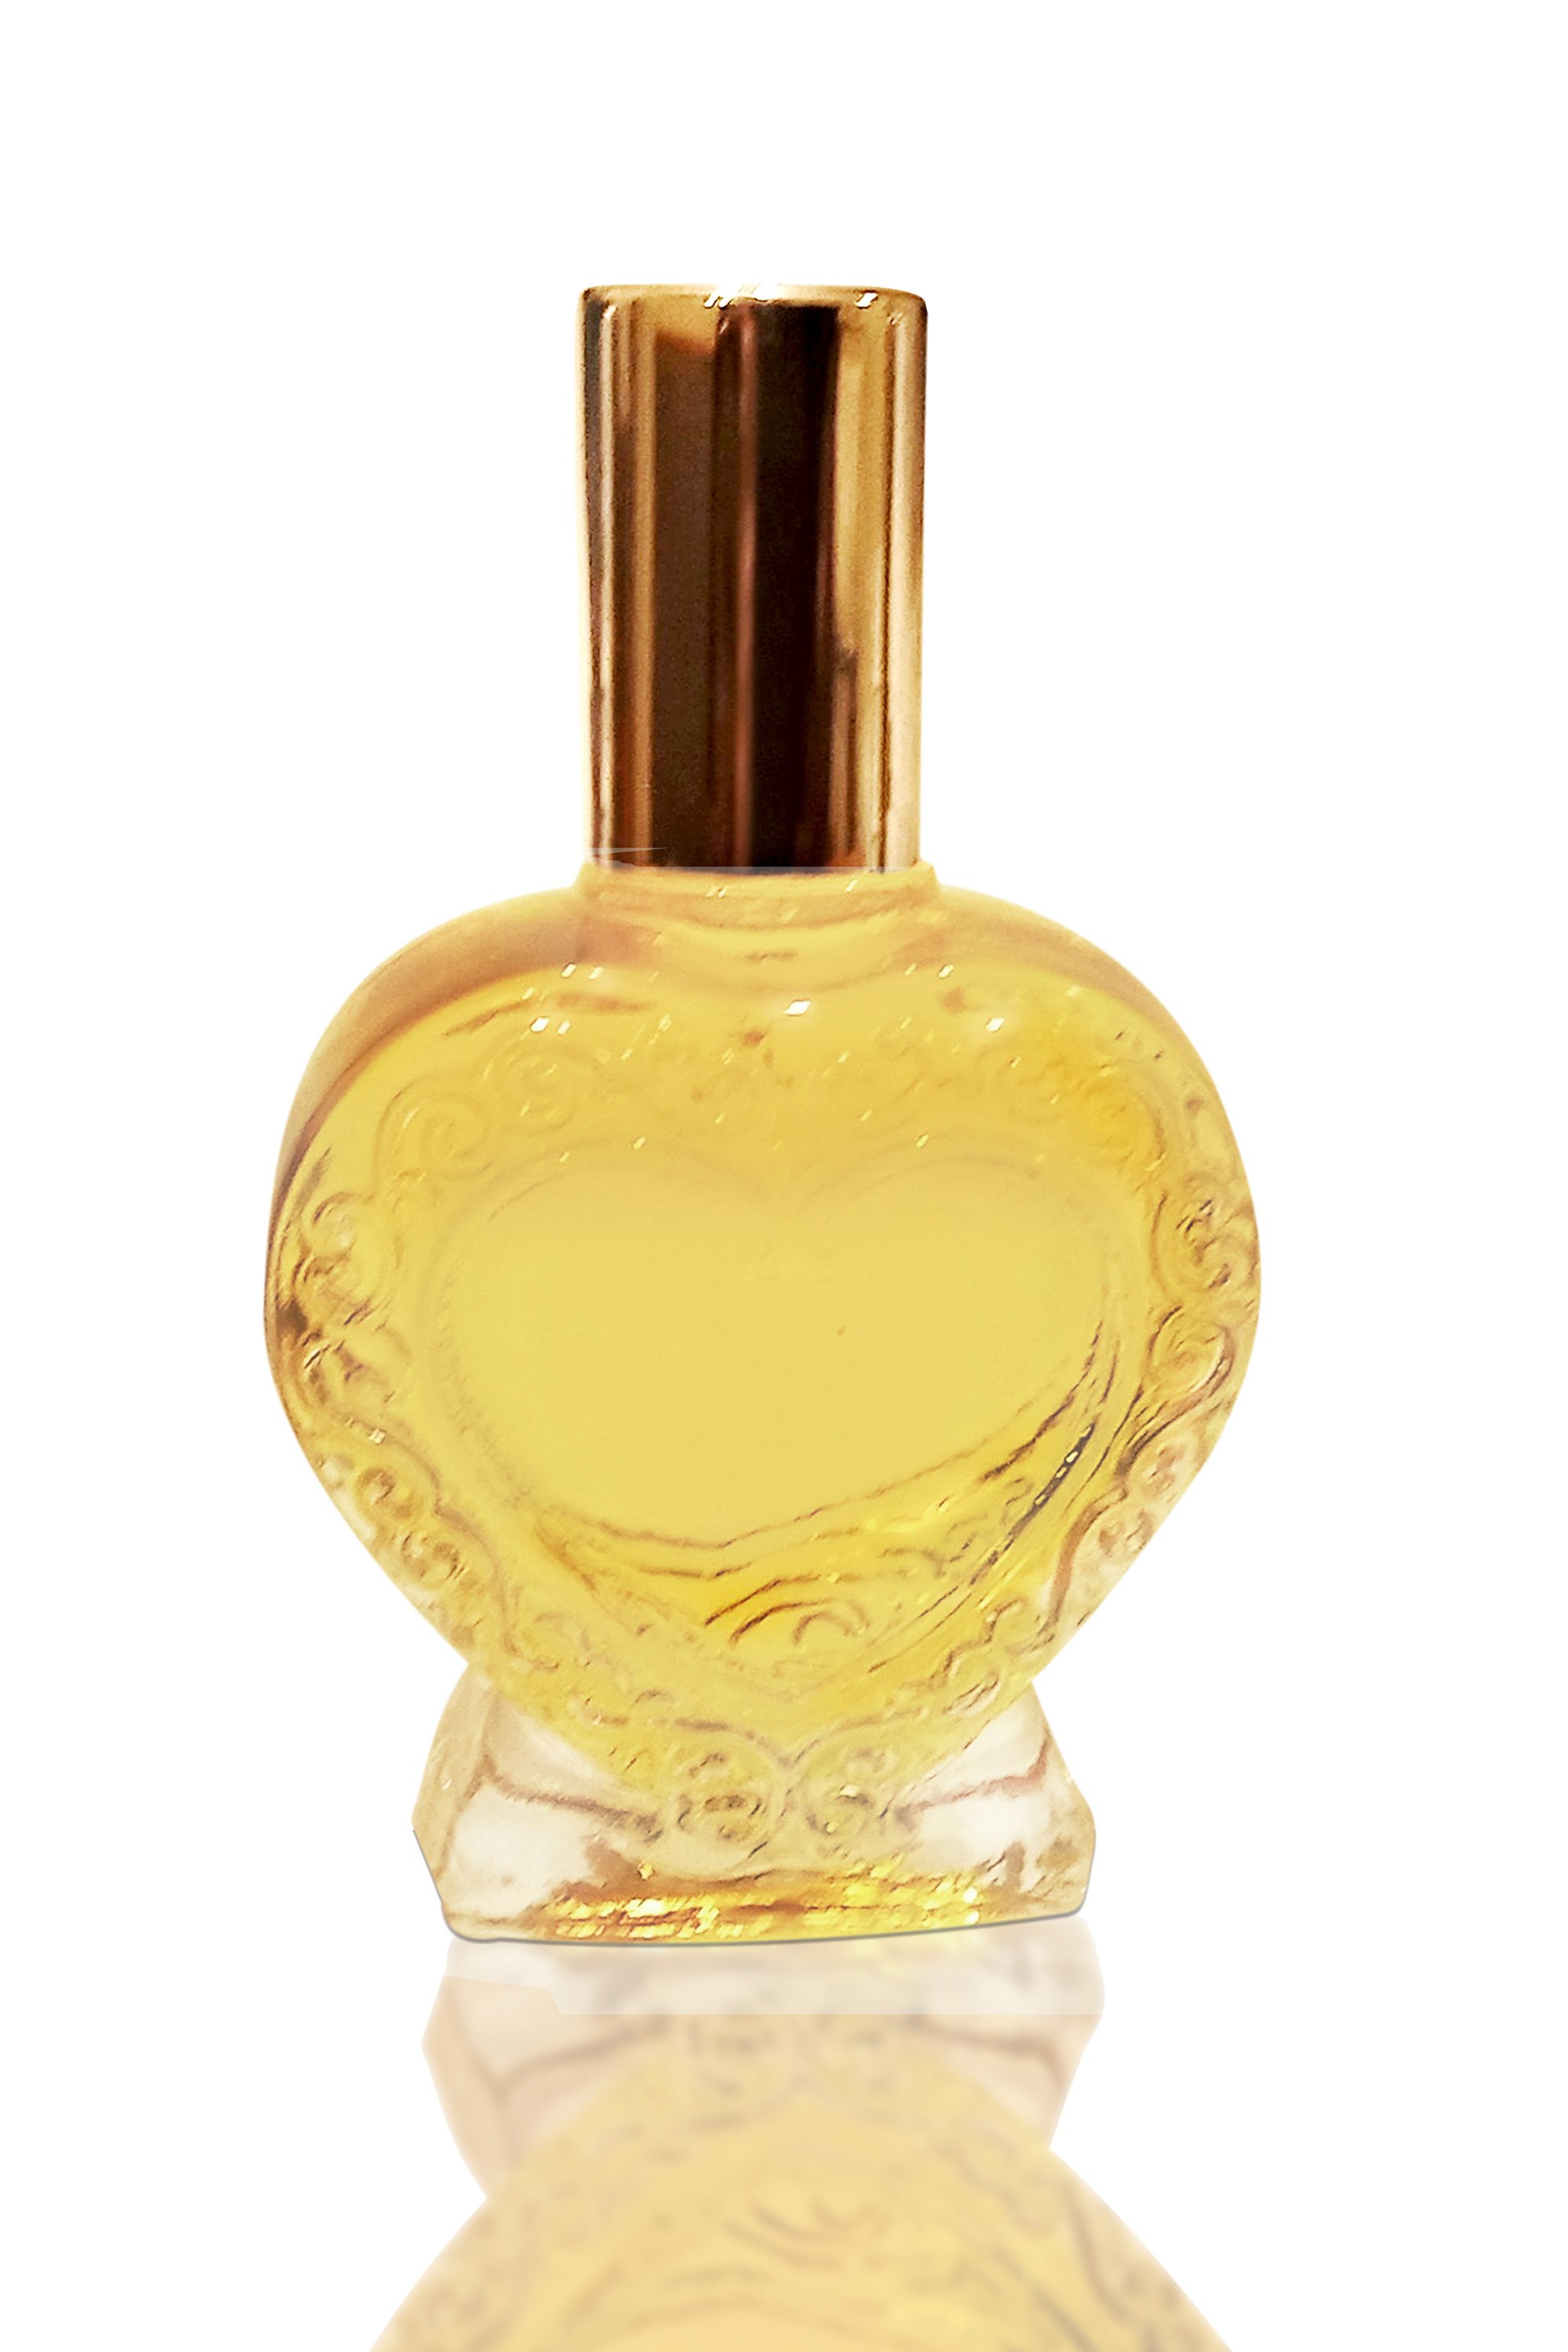 Essential Oils – E Perfume Bar